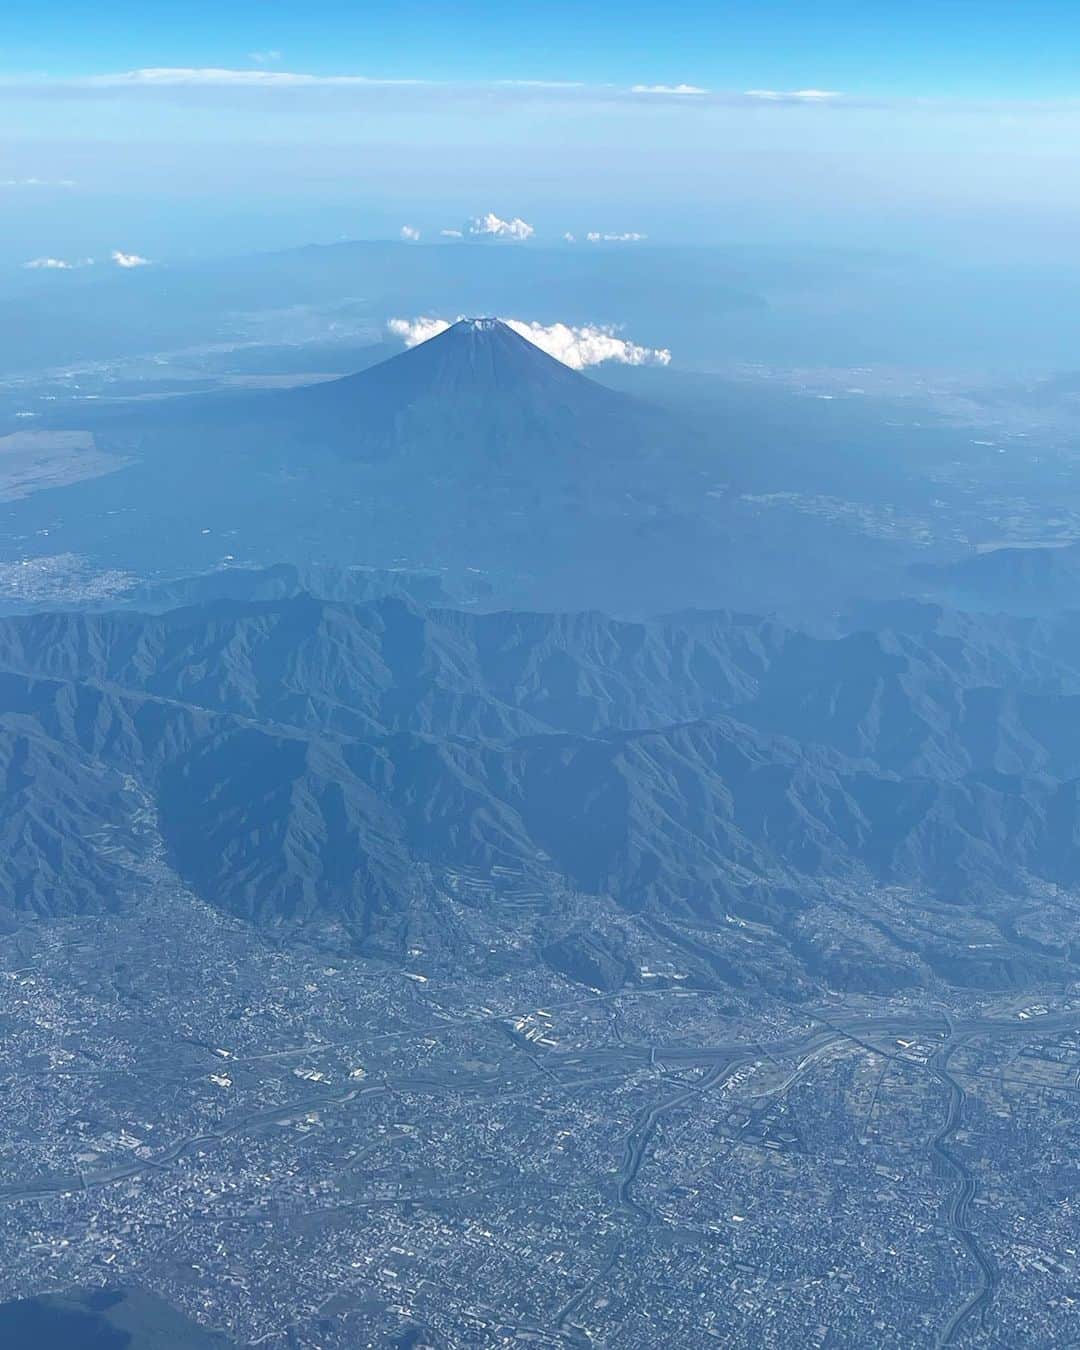 大貫亜美のインスタグラム：「ギターウルフのセイジさんがずっと誘ってくださってたシマネジェットフェスにようやく出れることになったので、島根に向かった飛行機で由美ちゃんがわたしの肩をトントンして、窓を指差して教えてくれたおかげで、とても綺麗な富士山を眺めることが出来ました🥰 夜は、謎に島根に居るでお馴染みの沖縄の人(モンゴル800でドラムを叩いているとかいないとか) のサトシくん  @satoshitakazato が松江の街を案内してくれて、一緒に地産の美味しいご飯を食べてちょっとだけウロウロしたよ。素敵なフォントの看板が沢山だった！魅力的な街過ぎた✨ #シマネジェットフェス2023 #飛行機でピューン✈️ #富士山🗻 #雪少ないね #島根県松江へGO #ポケスト回し忘れた #素敵な街並み #今後の参考にしたいフォントの看板 #モンゴル800 @satoshitakazato #サトシくんどこかに居るよ #釣らせる男 #亜美の釣りアテンダー #たしかドラマー #そして釣り人 #それでいて書家 #しかしその実態は #ラジコン少年おじさん #いつもアテンドありがとう☺️」